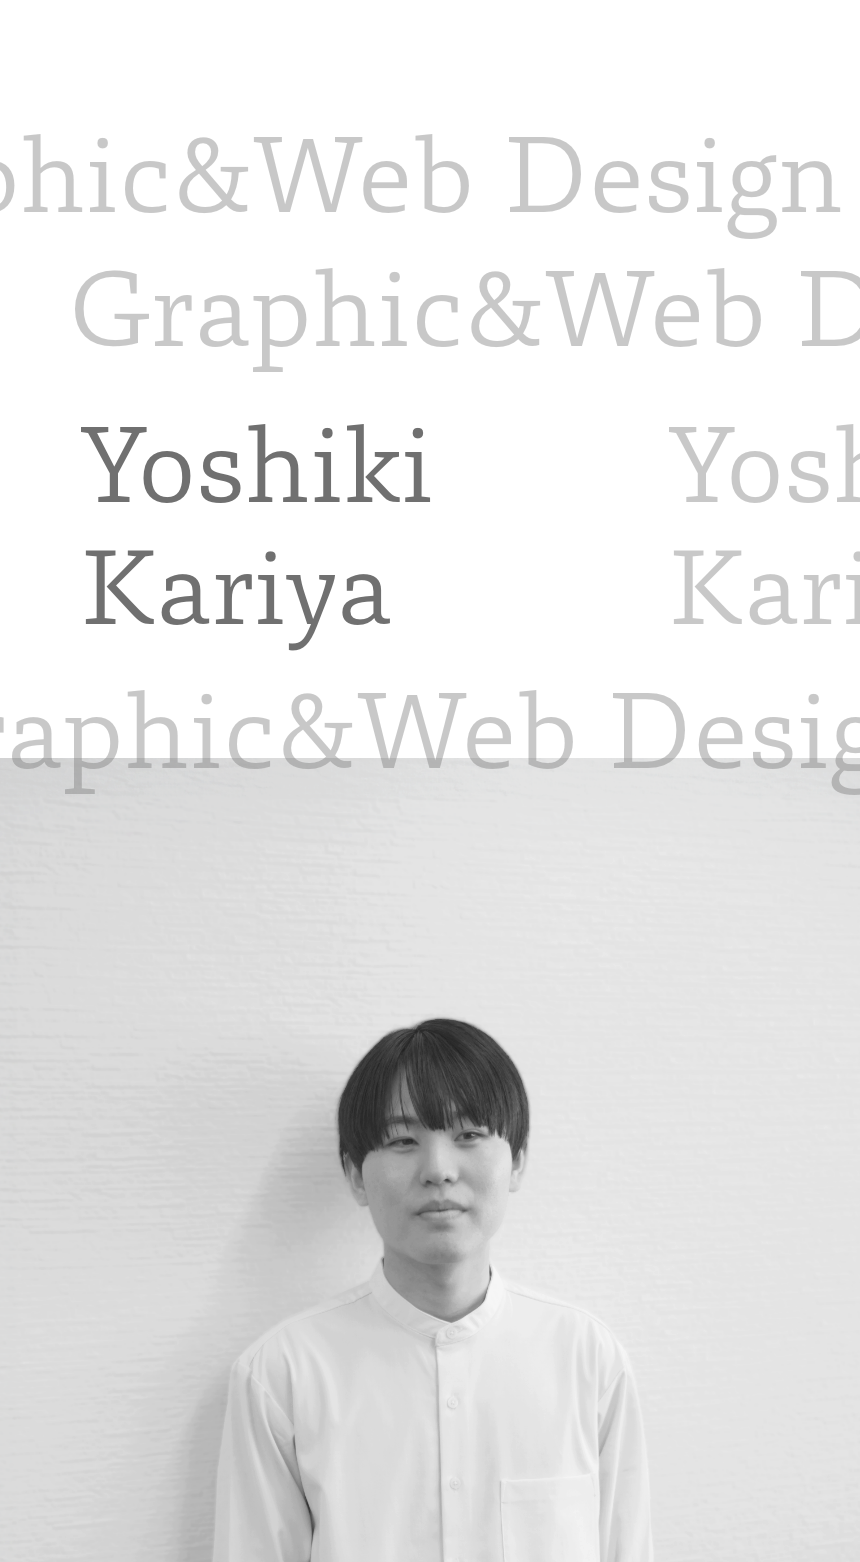 Yoshiki Kariya